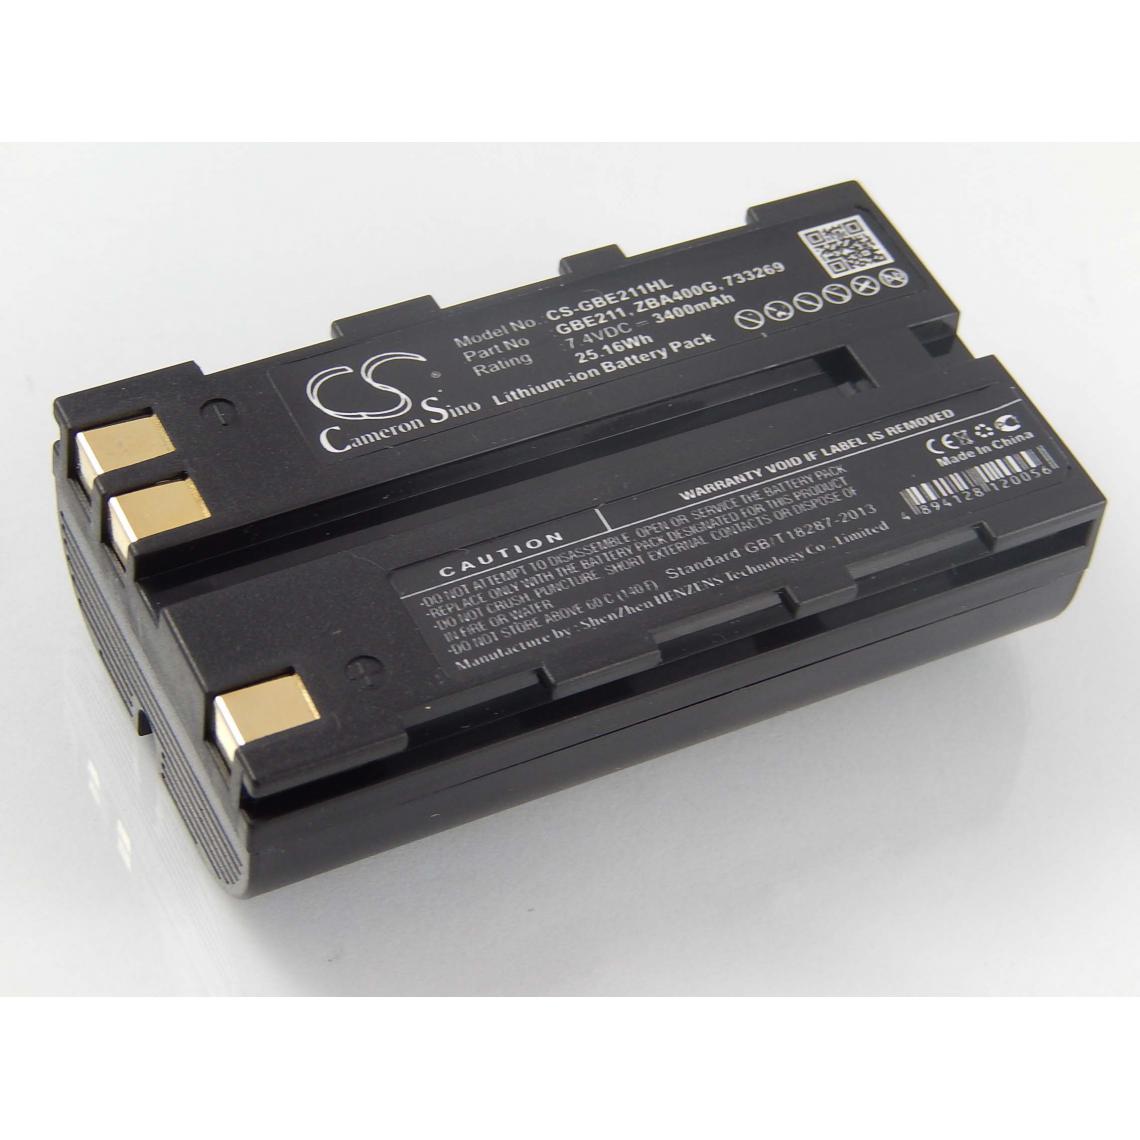 Vhbw - vhbw Batterie remplacement pour Leica 772806, GBE211, GEB211 pour dispositif de mesure laser, outil de mesure (3400mAh, 7,4V, Li-ion) - Piles rechargeables